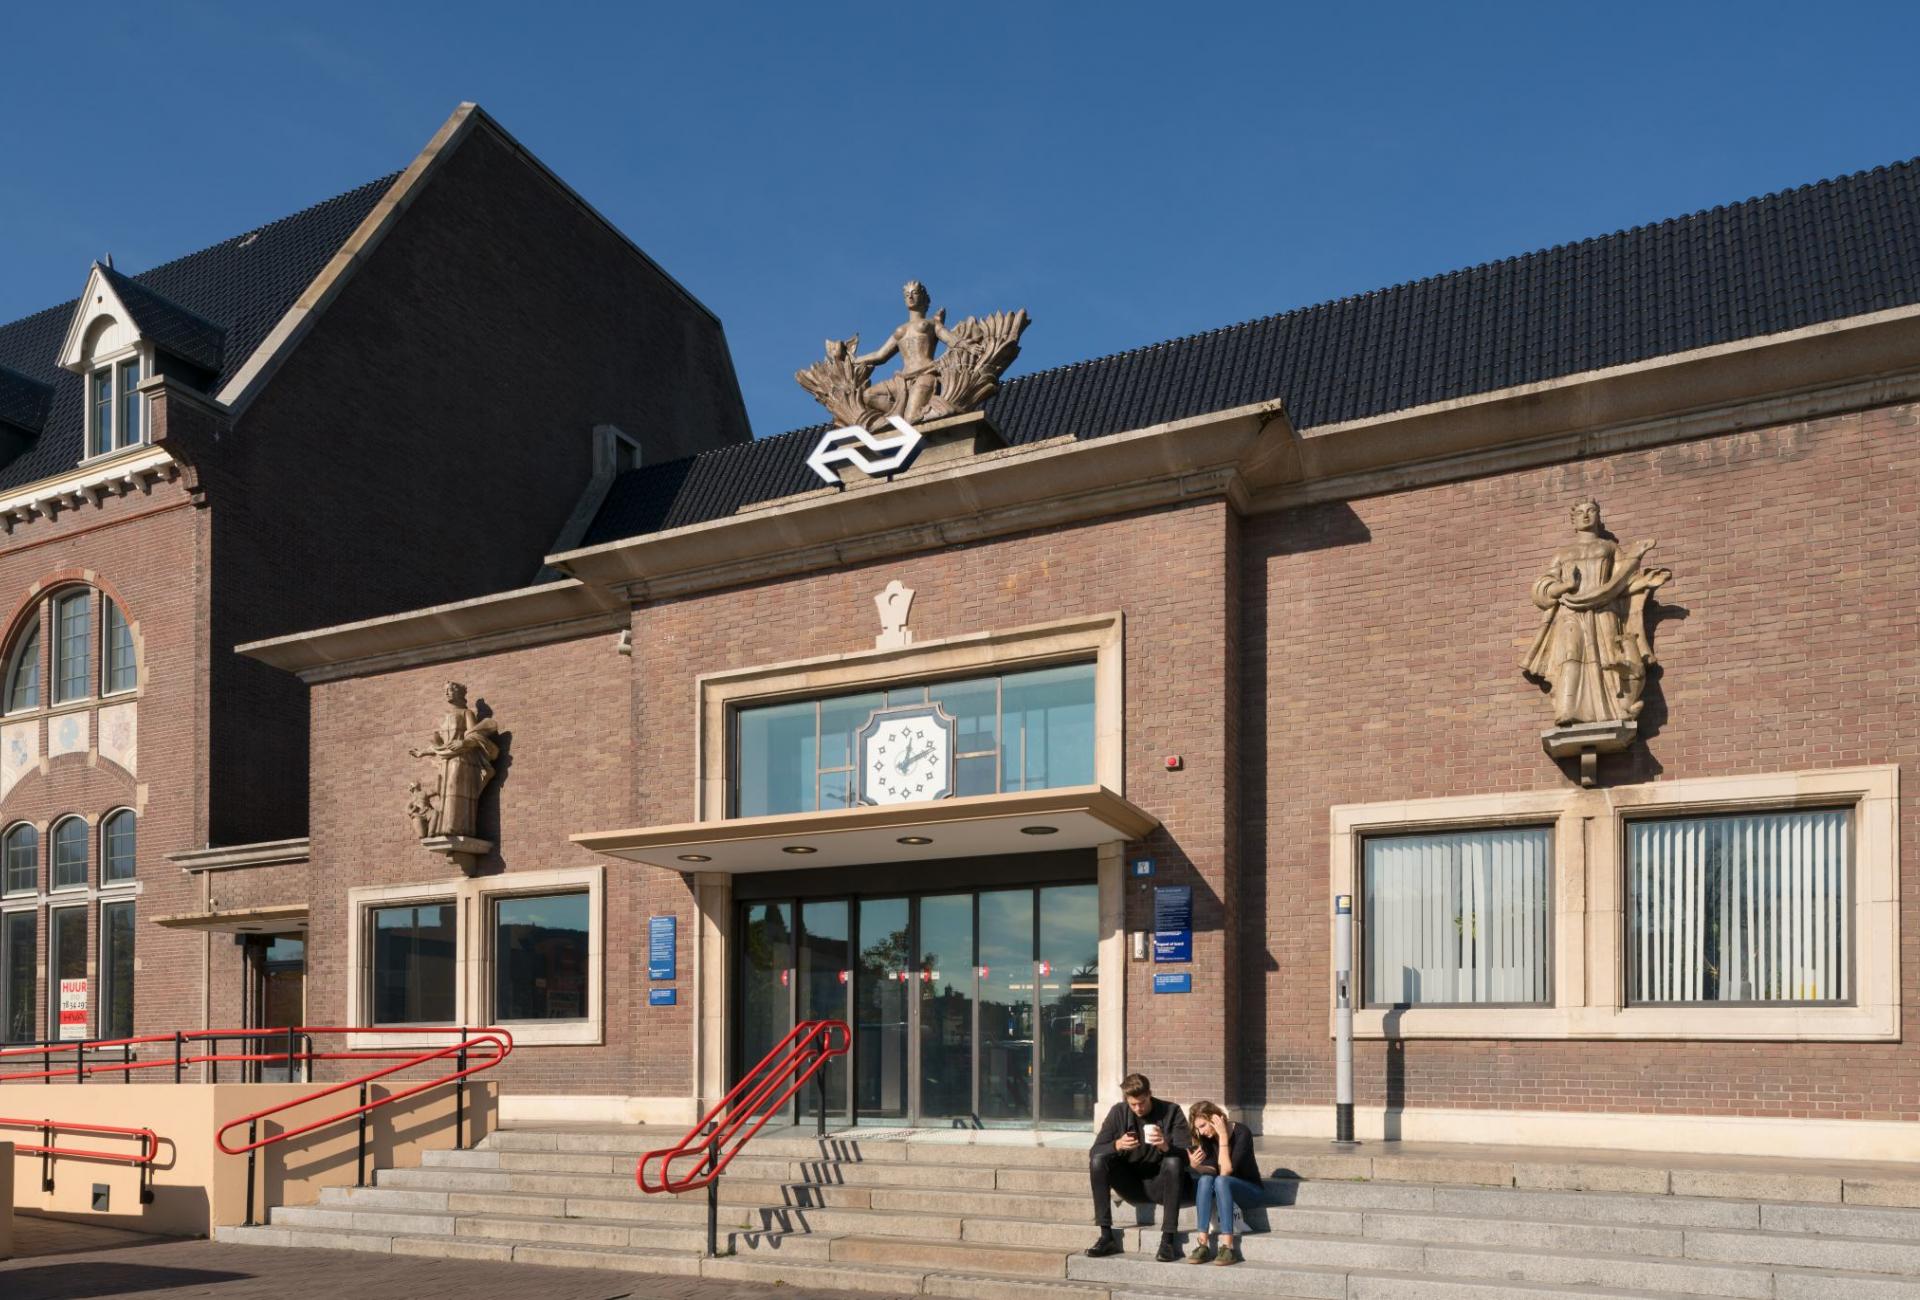 Station Roosendaal, fotograaf: Jannes Linders